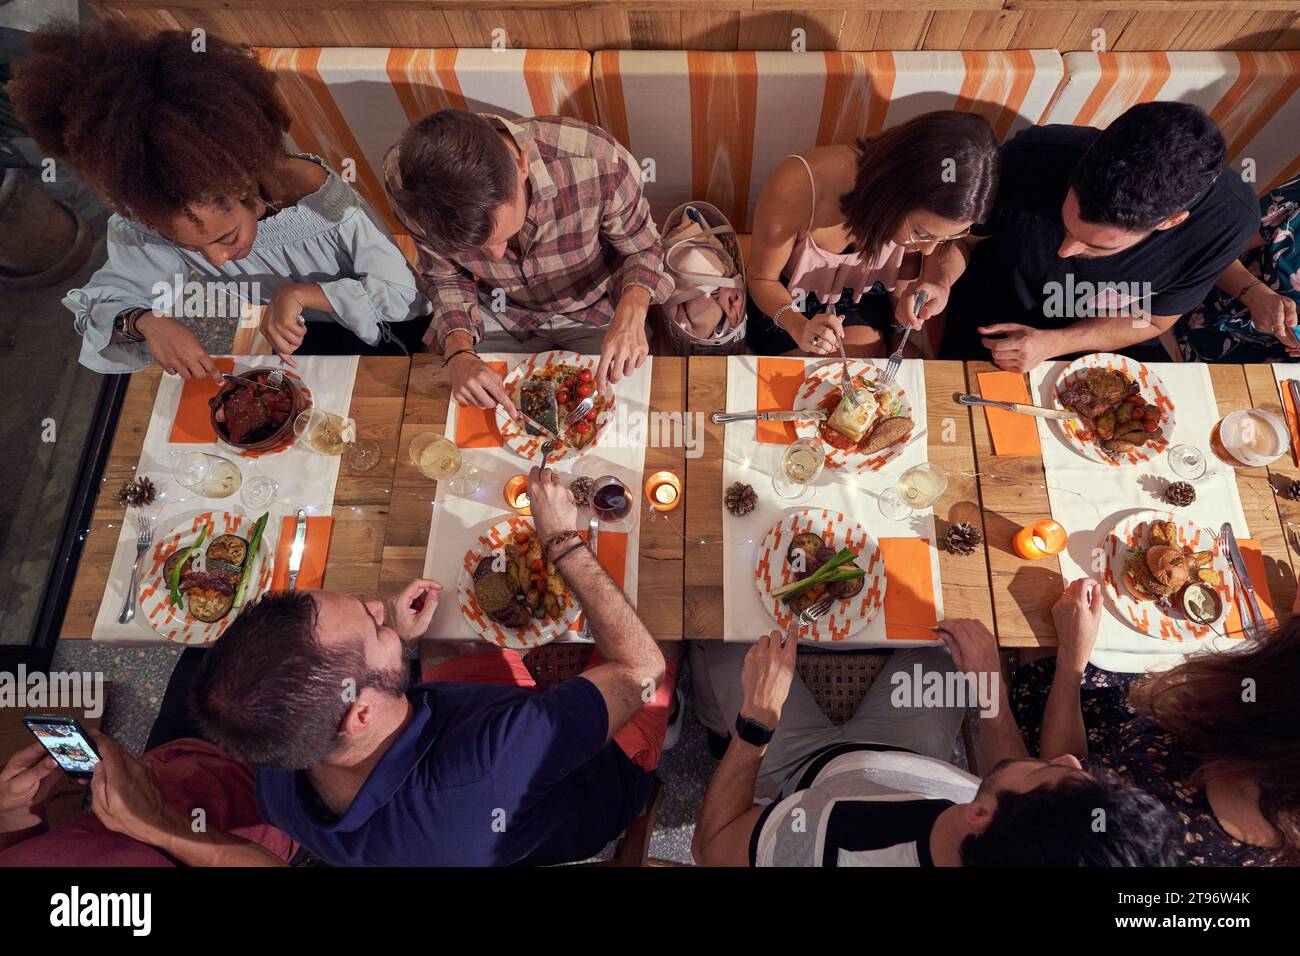 Dall'alto gruppo di amici multietnici seduti a tavola con vari piatti e bevande alcoliche mentre cenano insieme nel ristorante Foto Stock